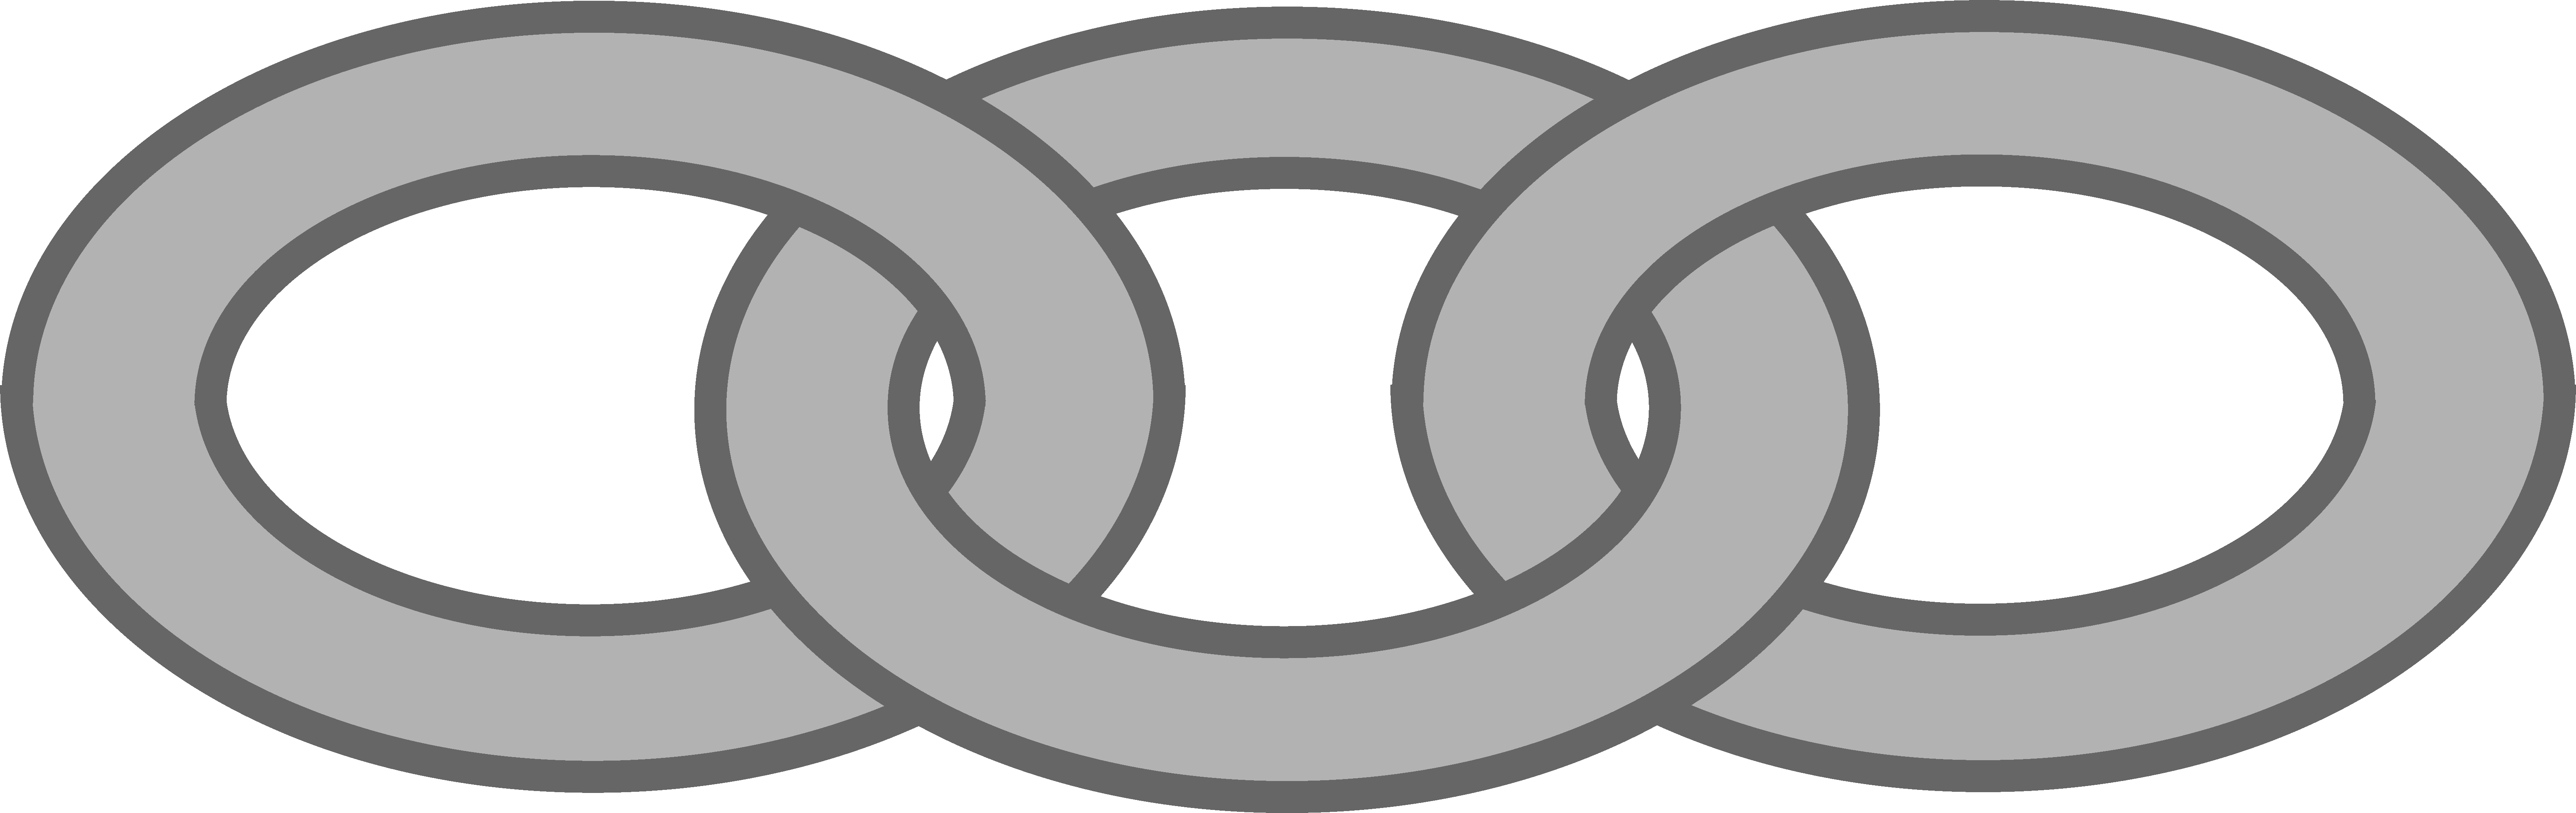 Chain - Clipart - Chain Link Clipart (6681x2109)